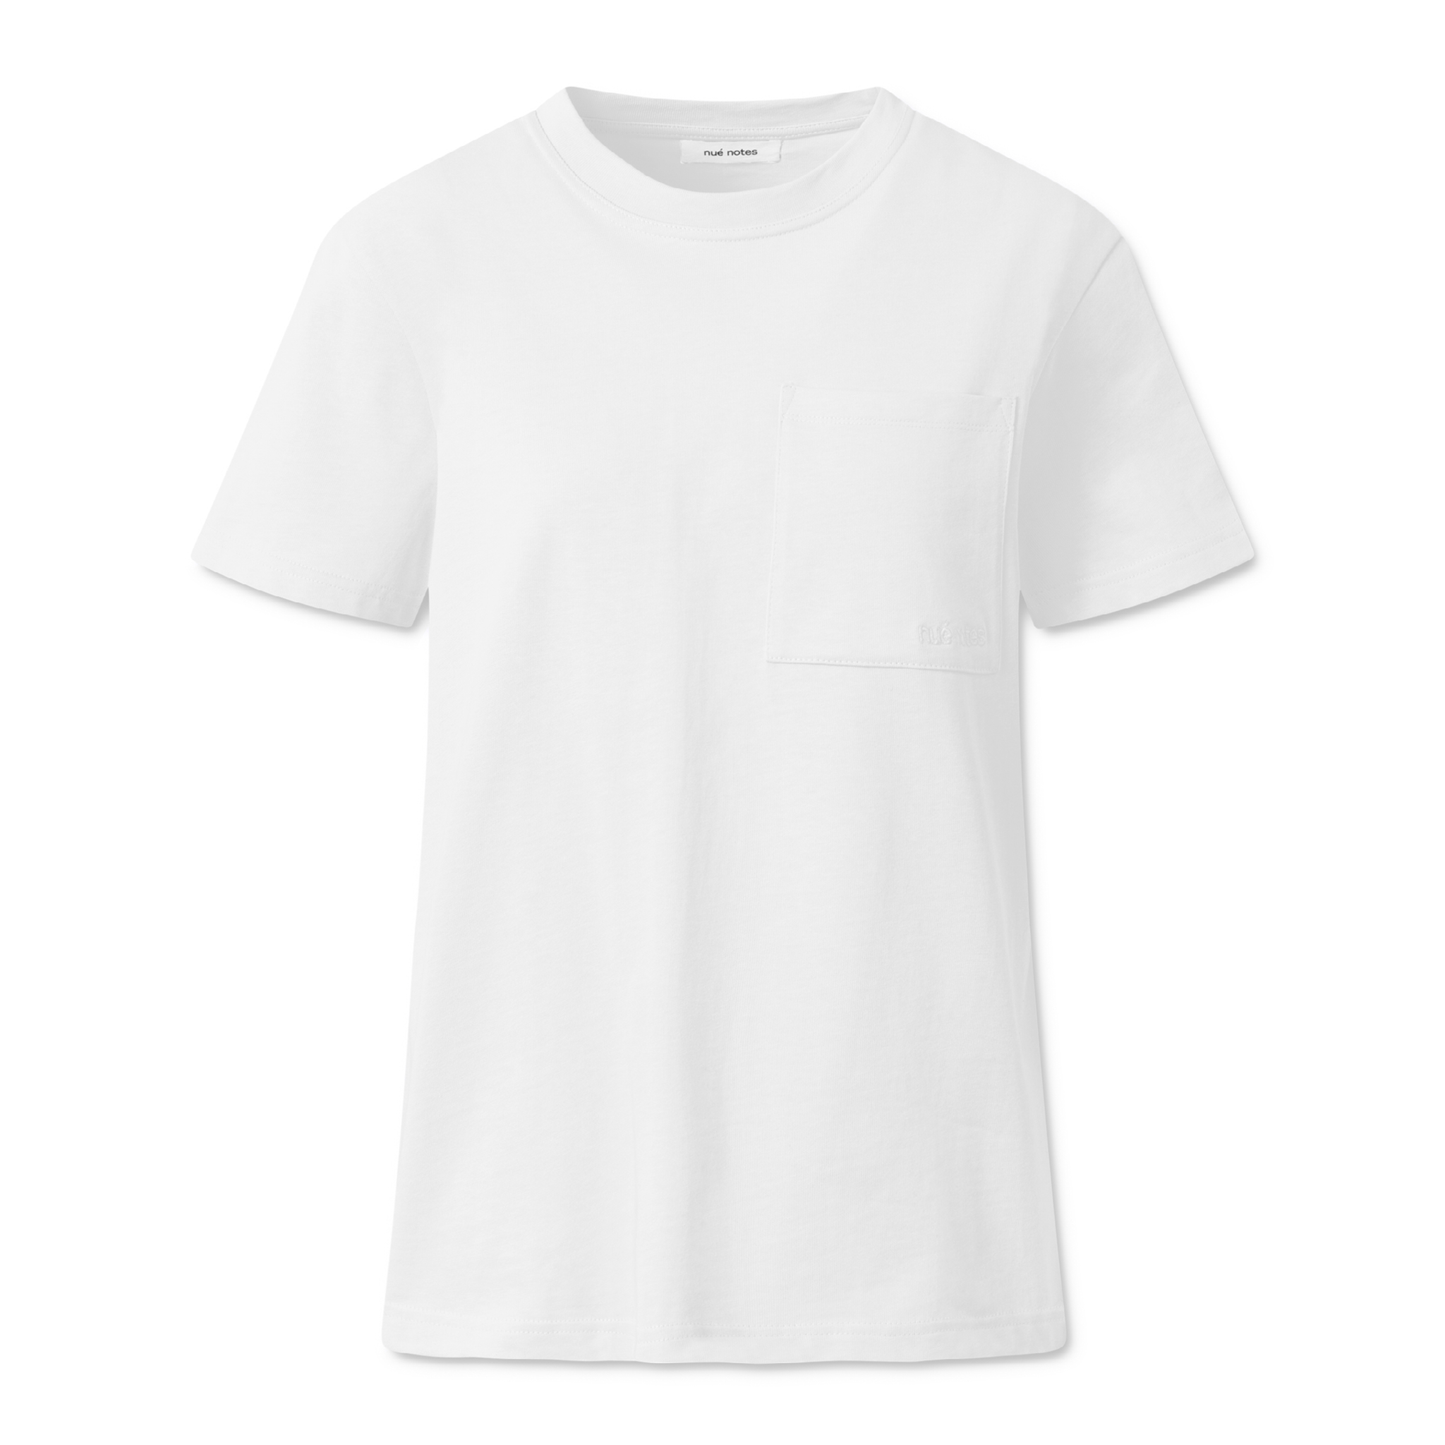 Mik T-Shirt, Bright White